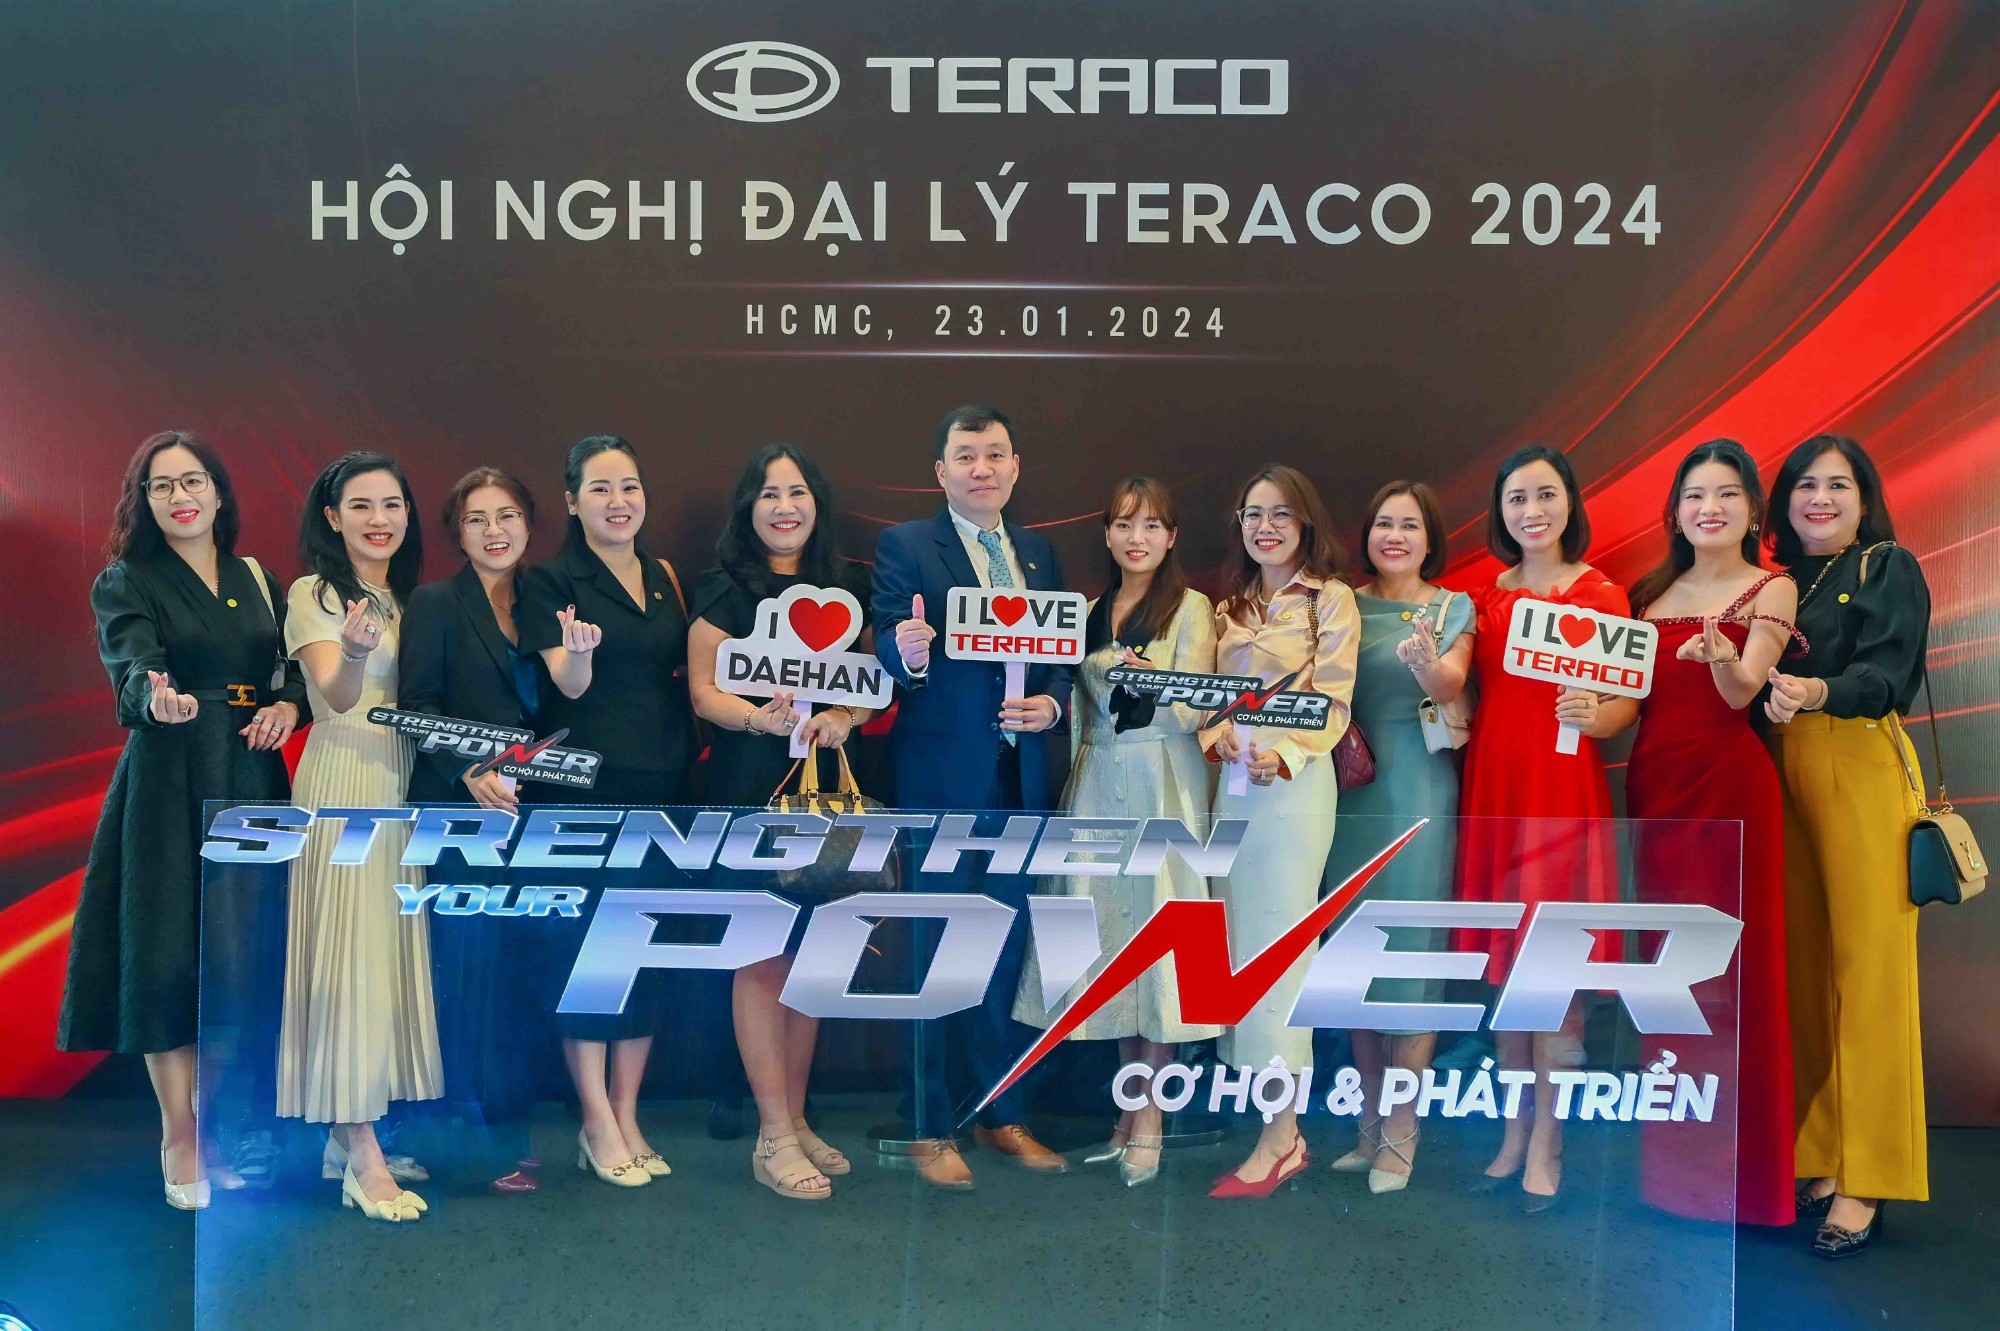 Hội nghị đại lý Teraco 2024